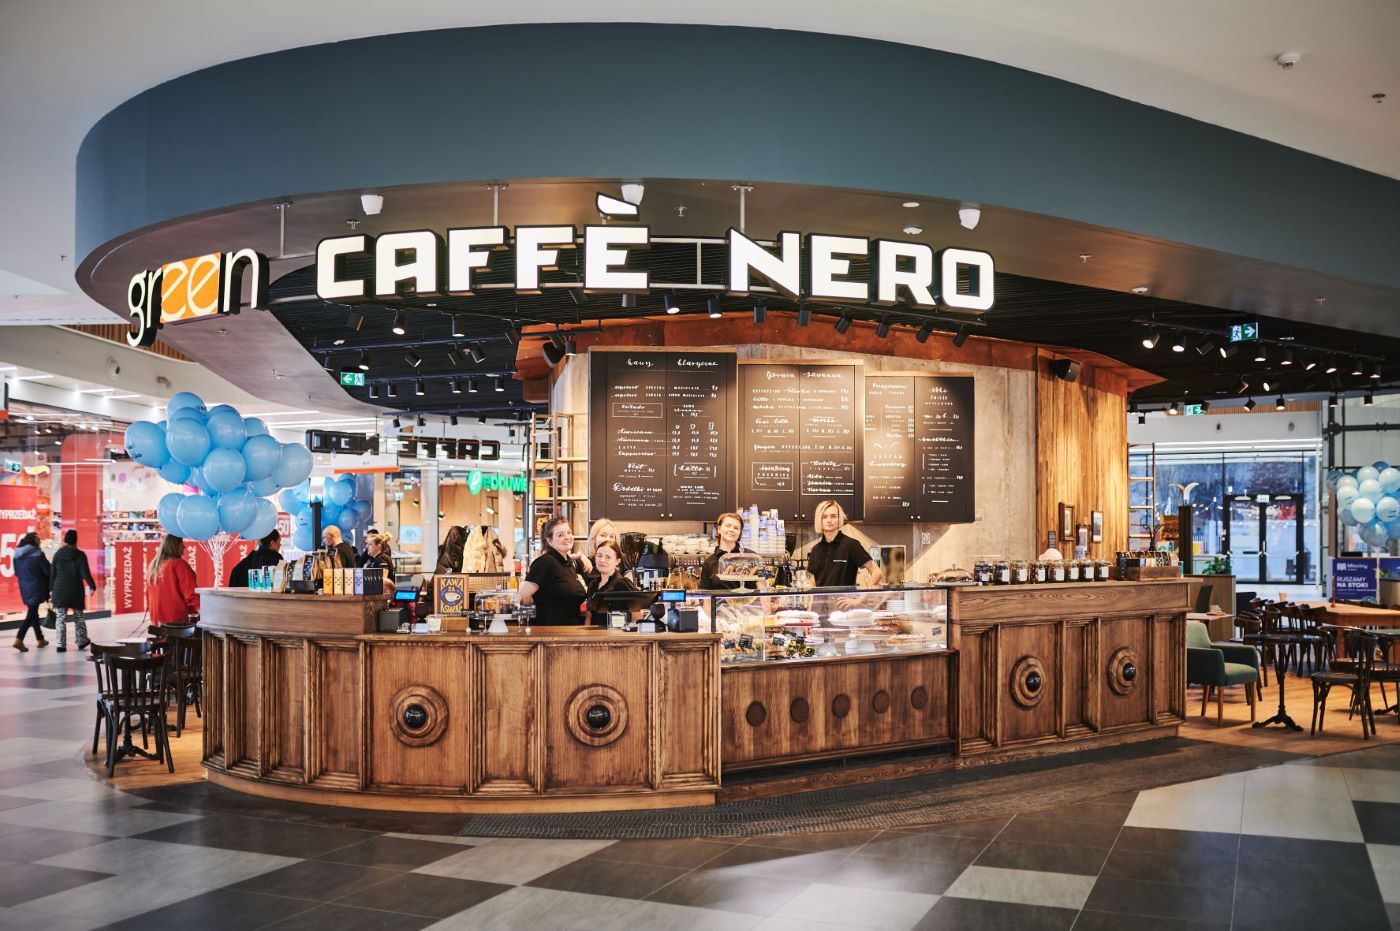 mlociny 1 - Sześć nowych kawiarni na dobry początek roku − dynamiczny rozwój Green Caffè Nero.